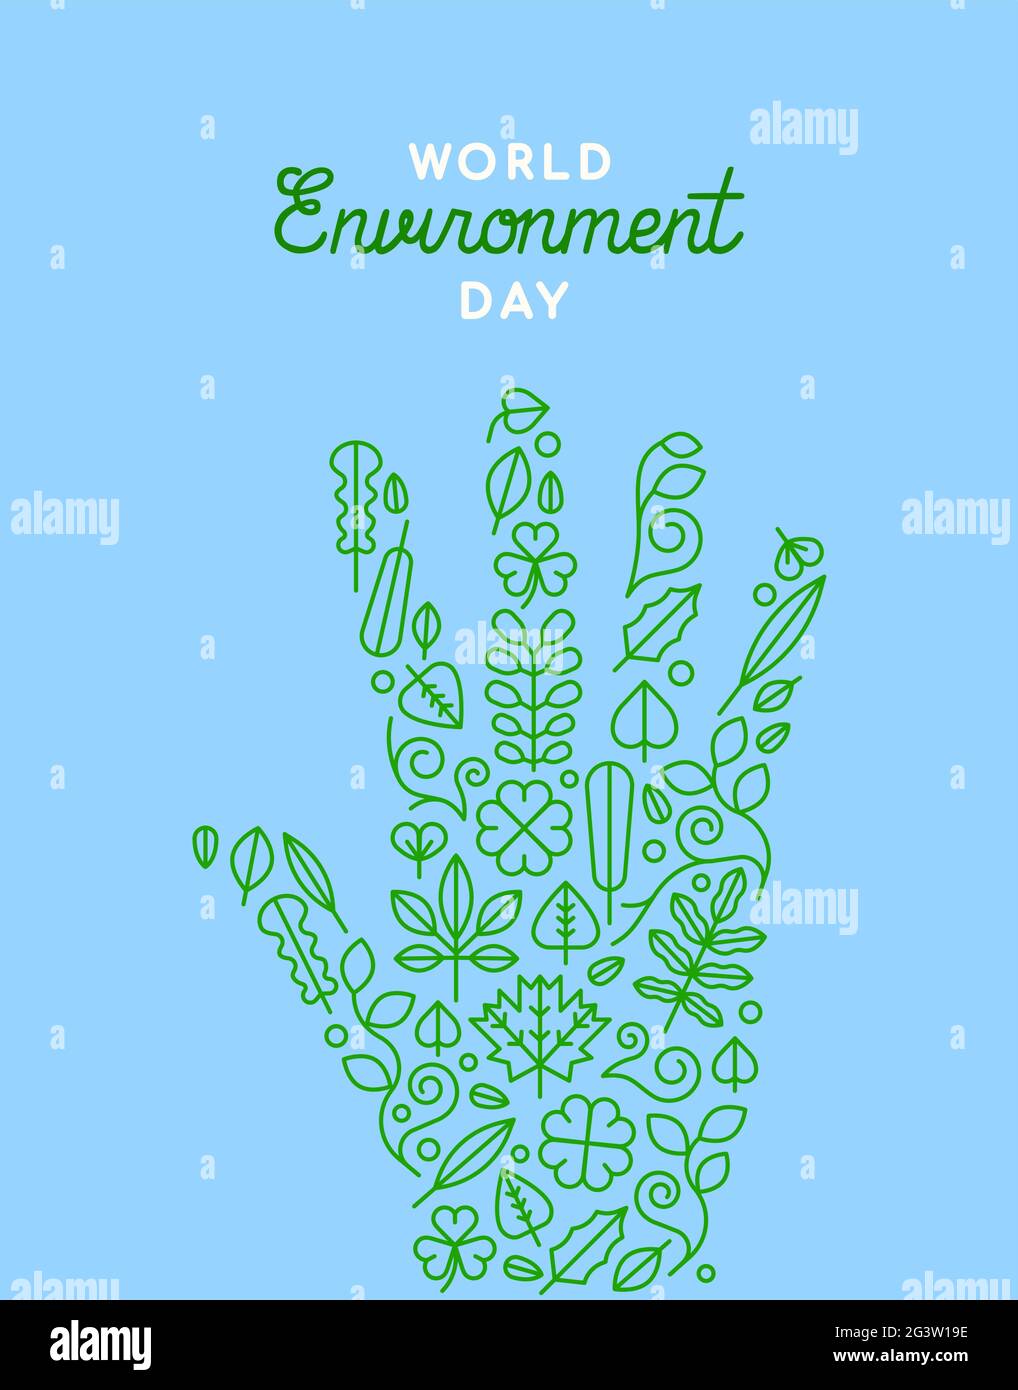 Carte de vœux de la Journée mondiale de l'environnement illustration de personnes faites à la main avec des icônes de feuilles de plantes vertes pour célébrer les soins de la terre. Illustration de Vecteur